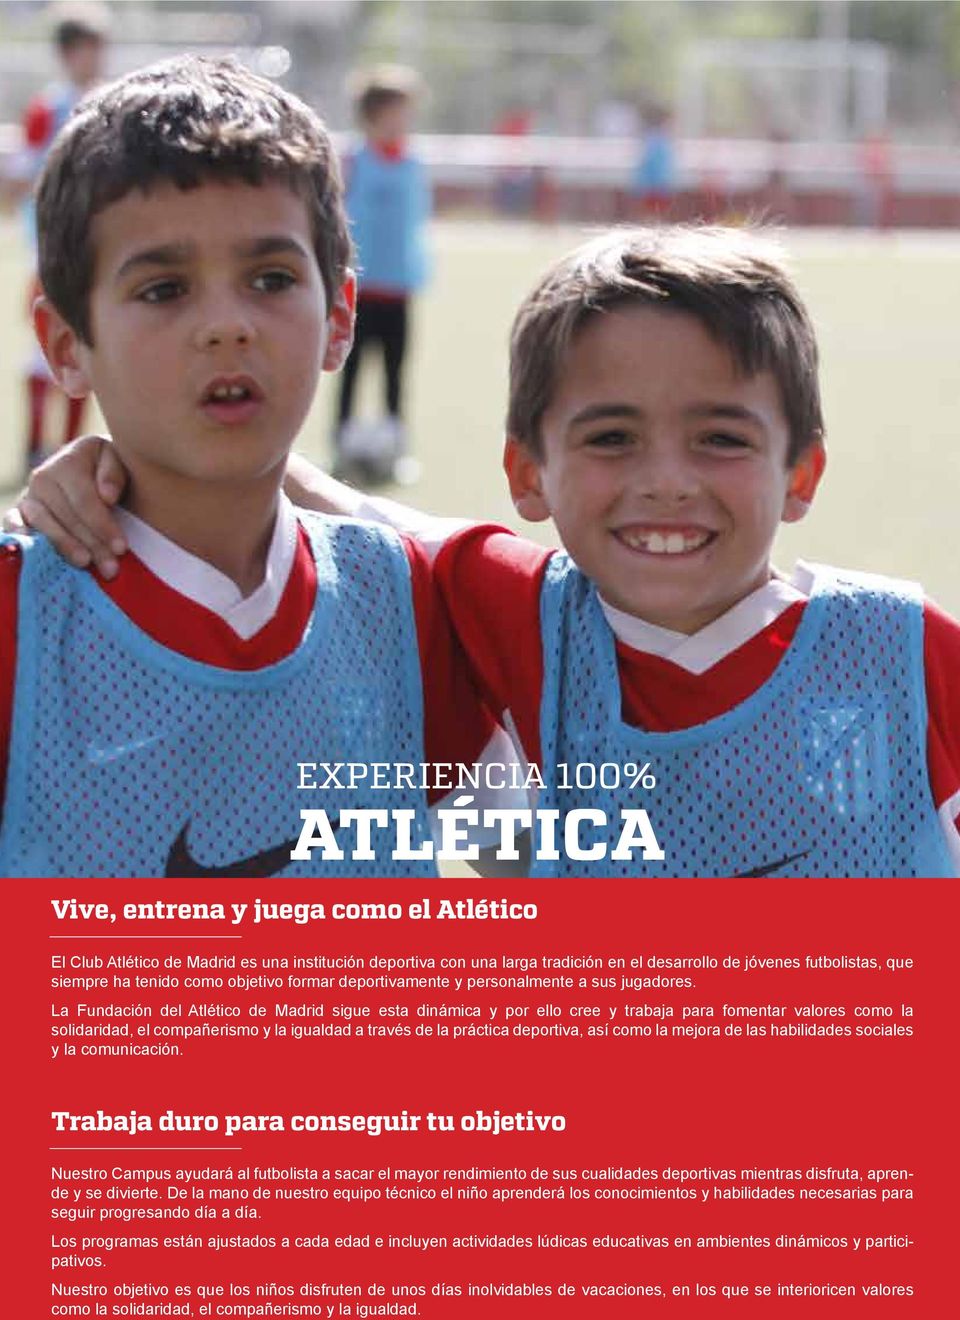 La Fundación del Atlético de Madrid sigue esta dinámica y por ello cree y trabaja para fomentar valores como la solidaridad, el compañerismo y la igualdad a través de la práctica deportiva, así como